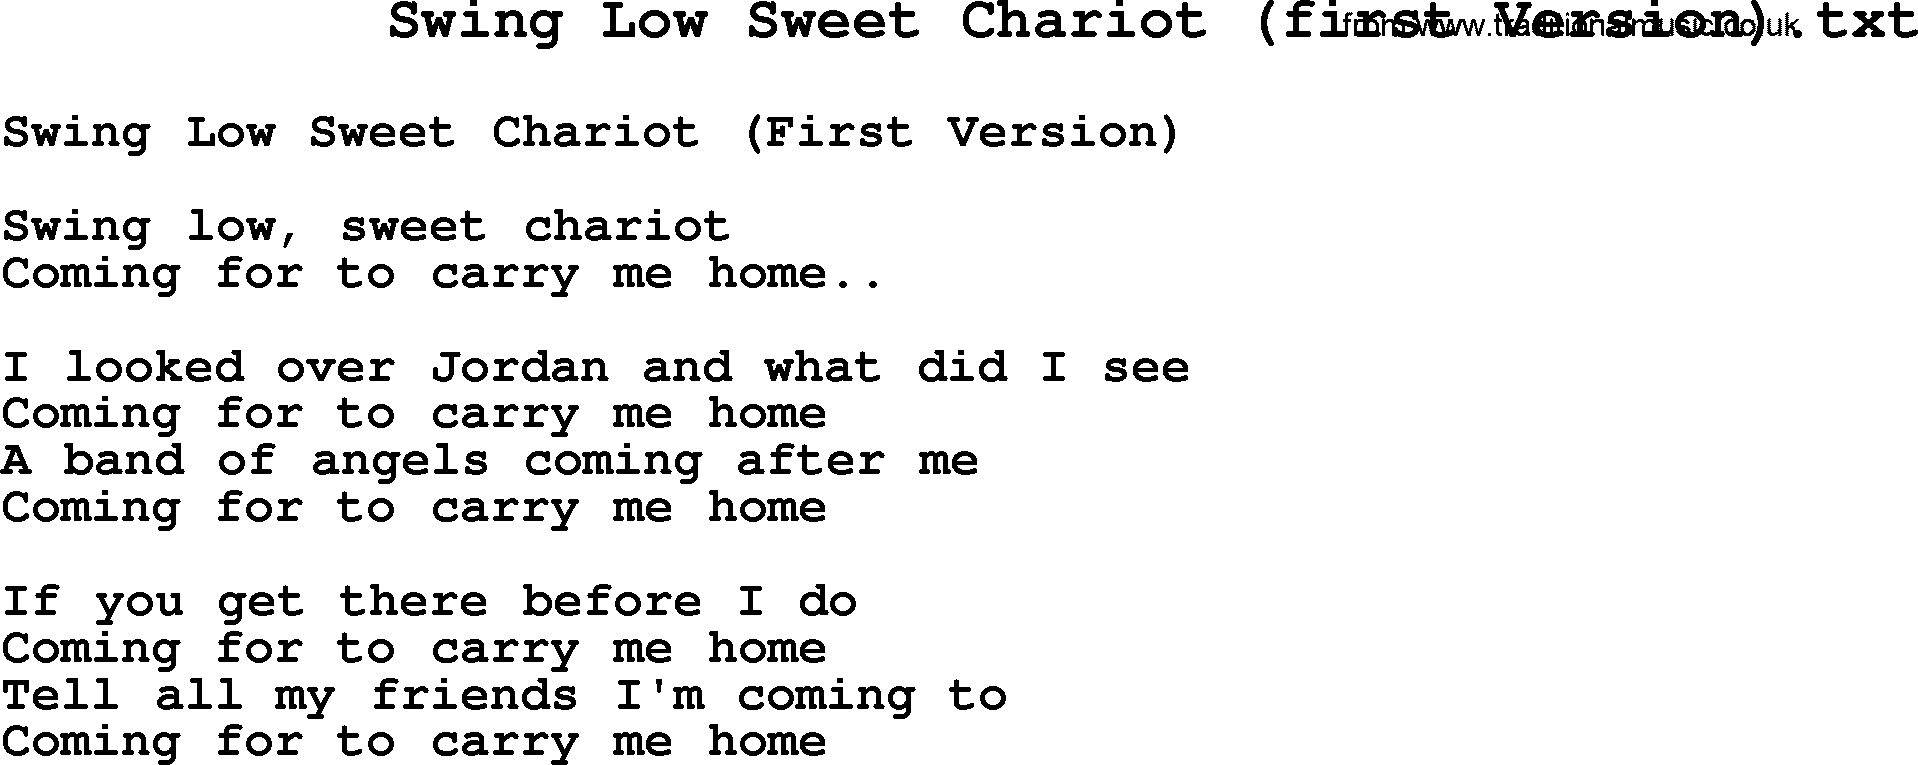 Negro Spiritual Song Lyrics for Swing Low Sweet Chariot (1)